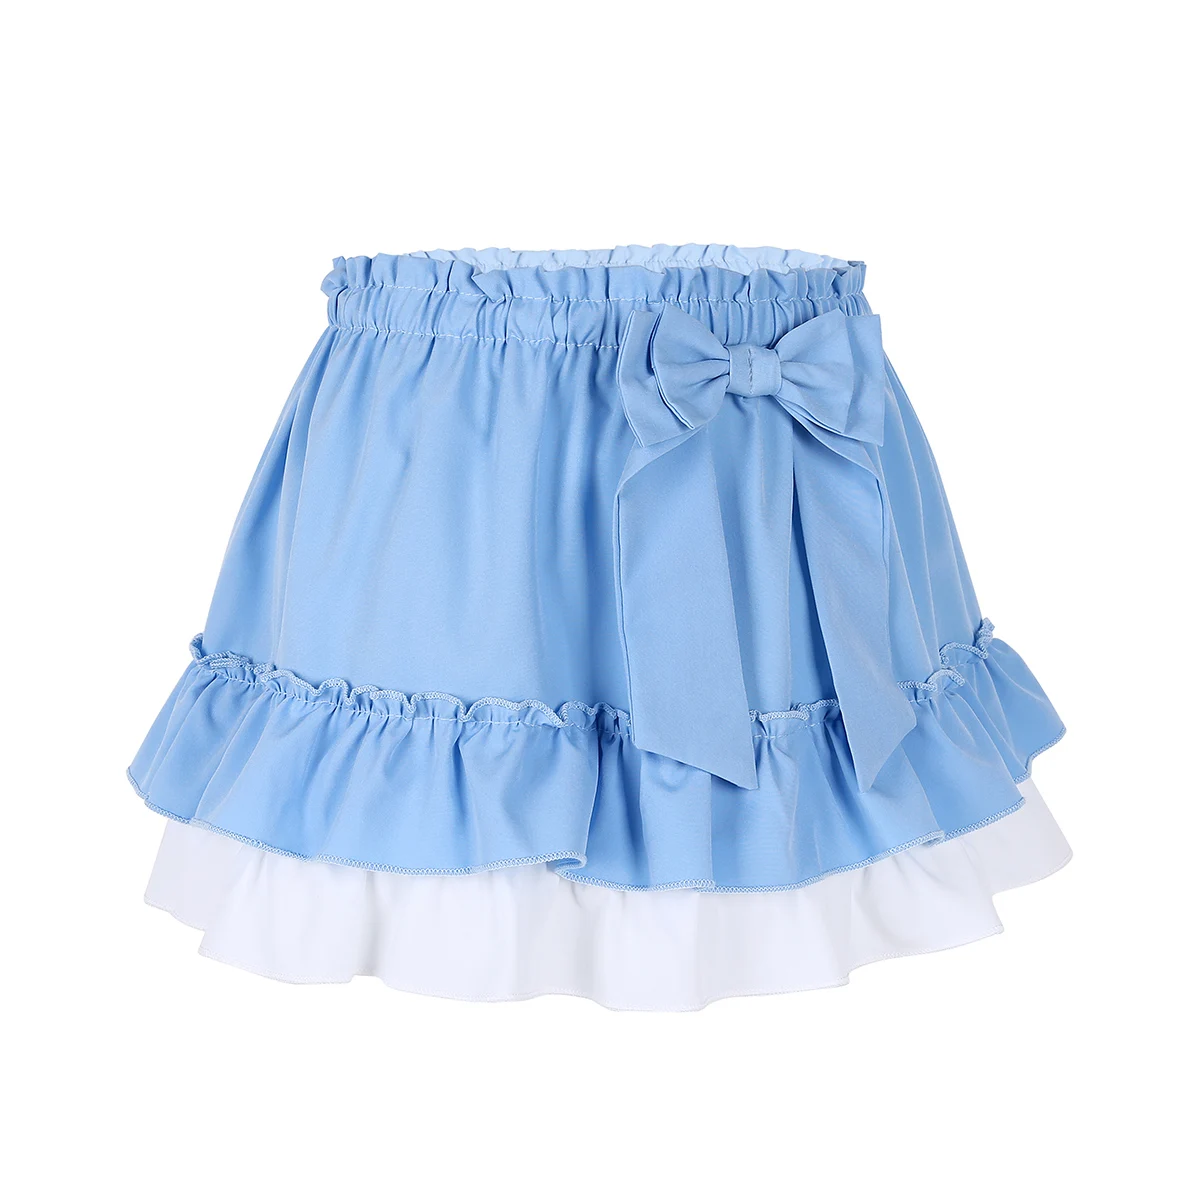 Iiniim/эластичные детские фантазийные юбки унисекс для мужчин и женщин с бантом; короткая юбка с оборками и оборками; Kawaii; трапециевидная мини-юбка для костюмированной вечеринки - Цвет: Light Blue